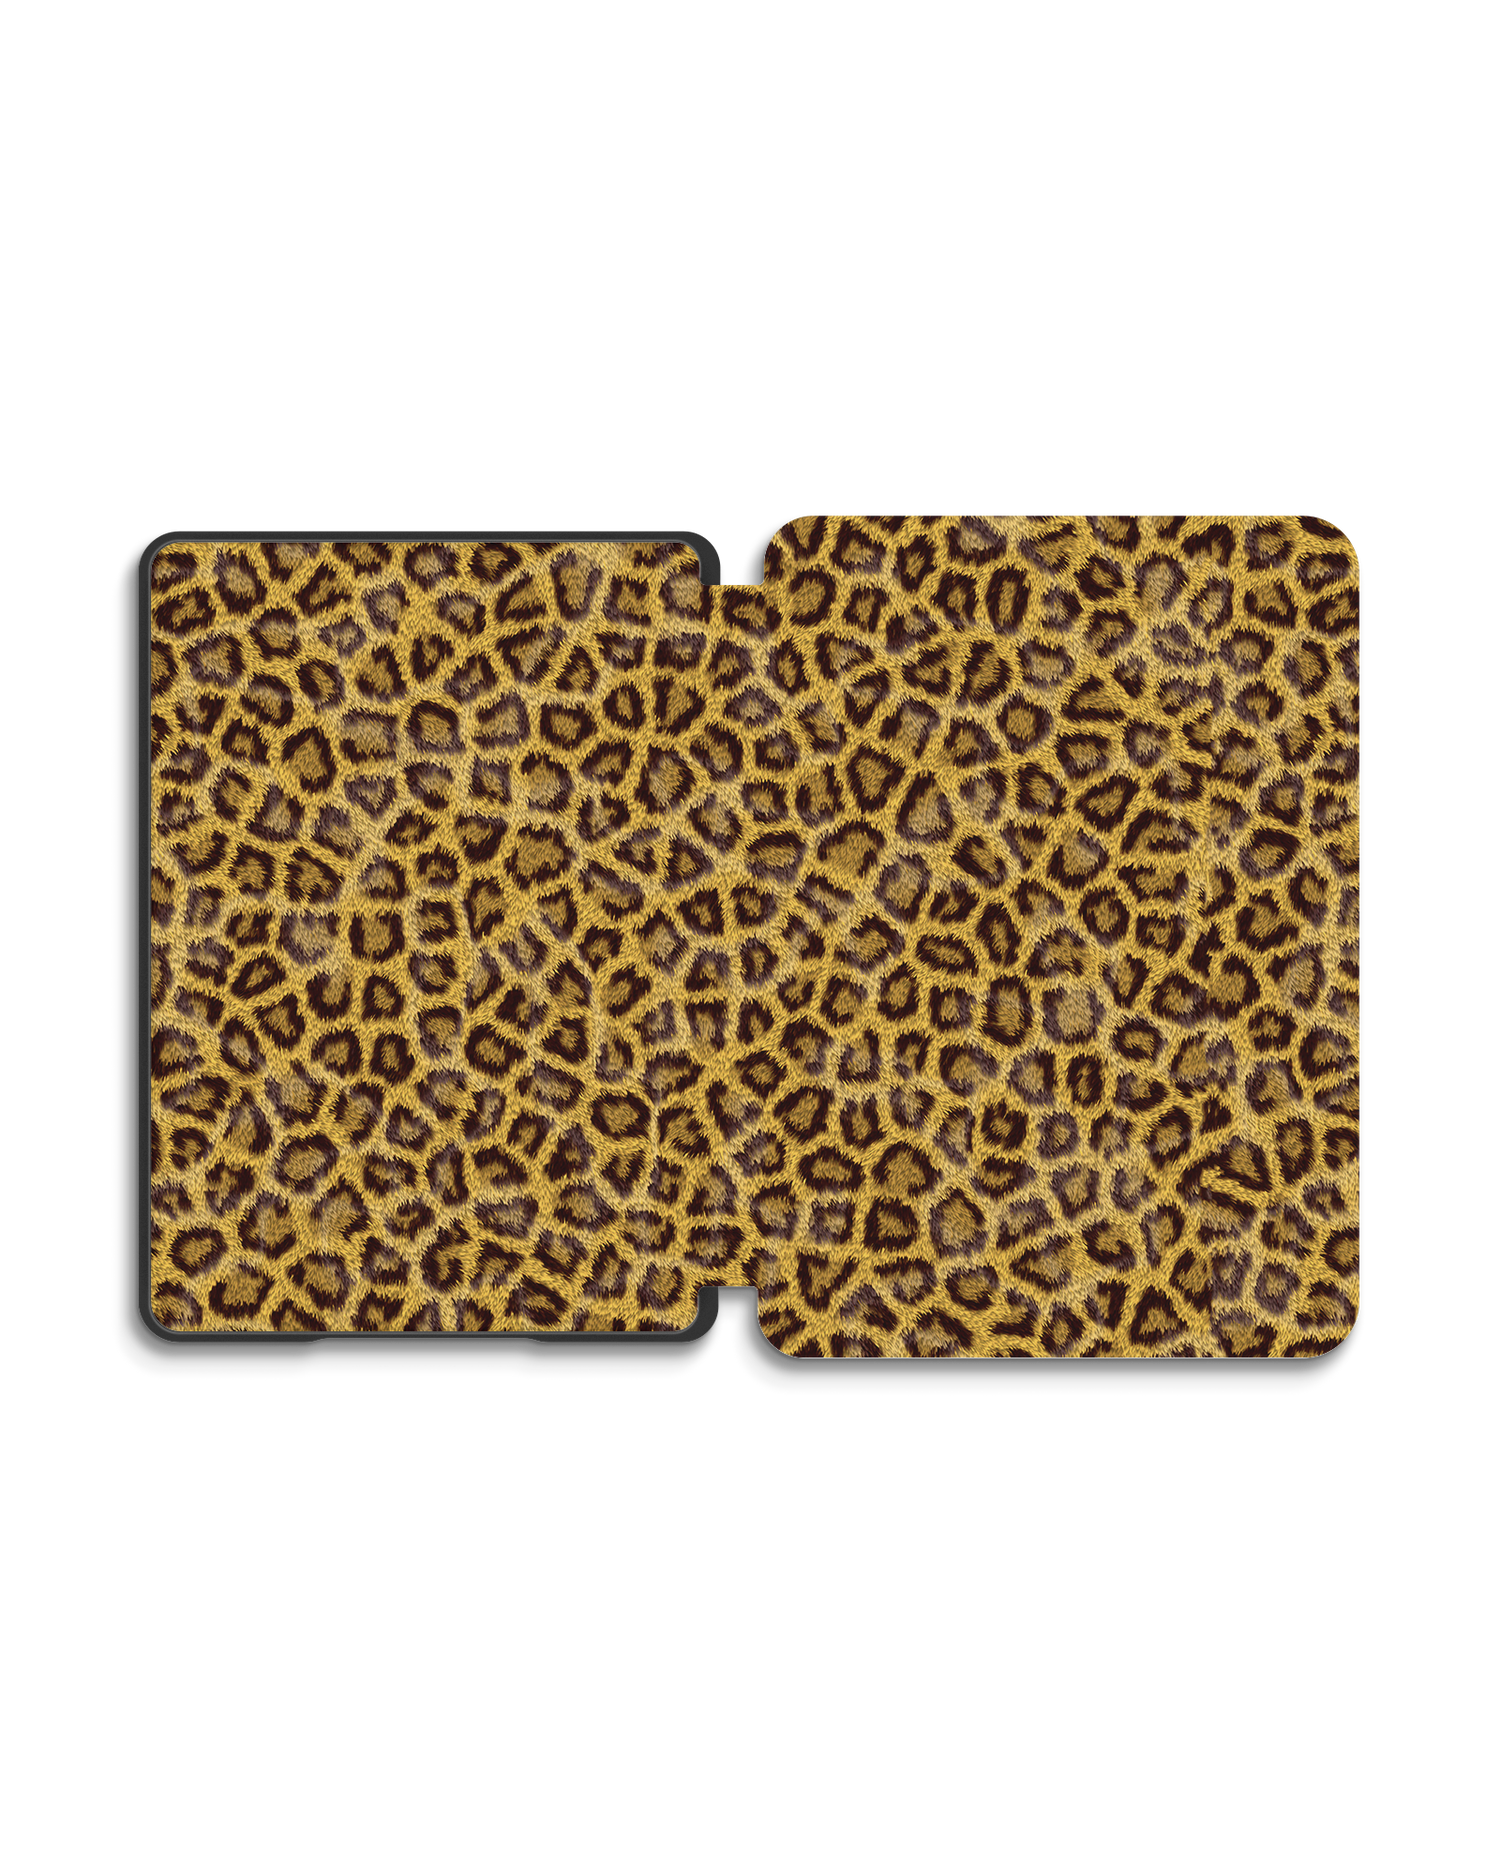 Leopard Skin eBook Reader Smart Case für Amazon New Kindle (2019): Geöffnet Außenansicht